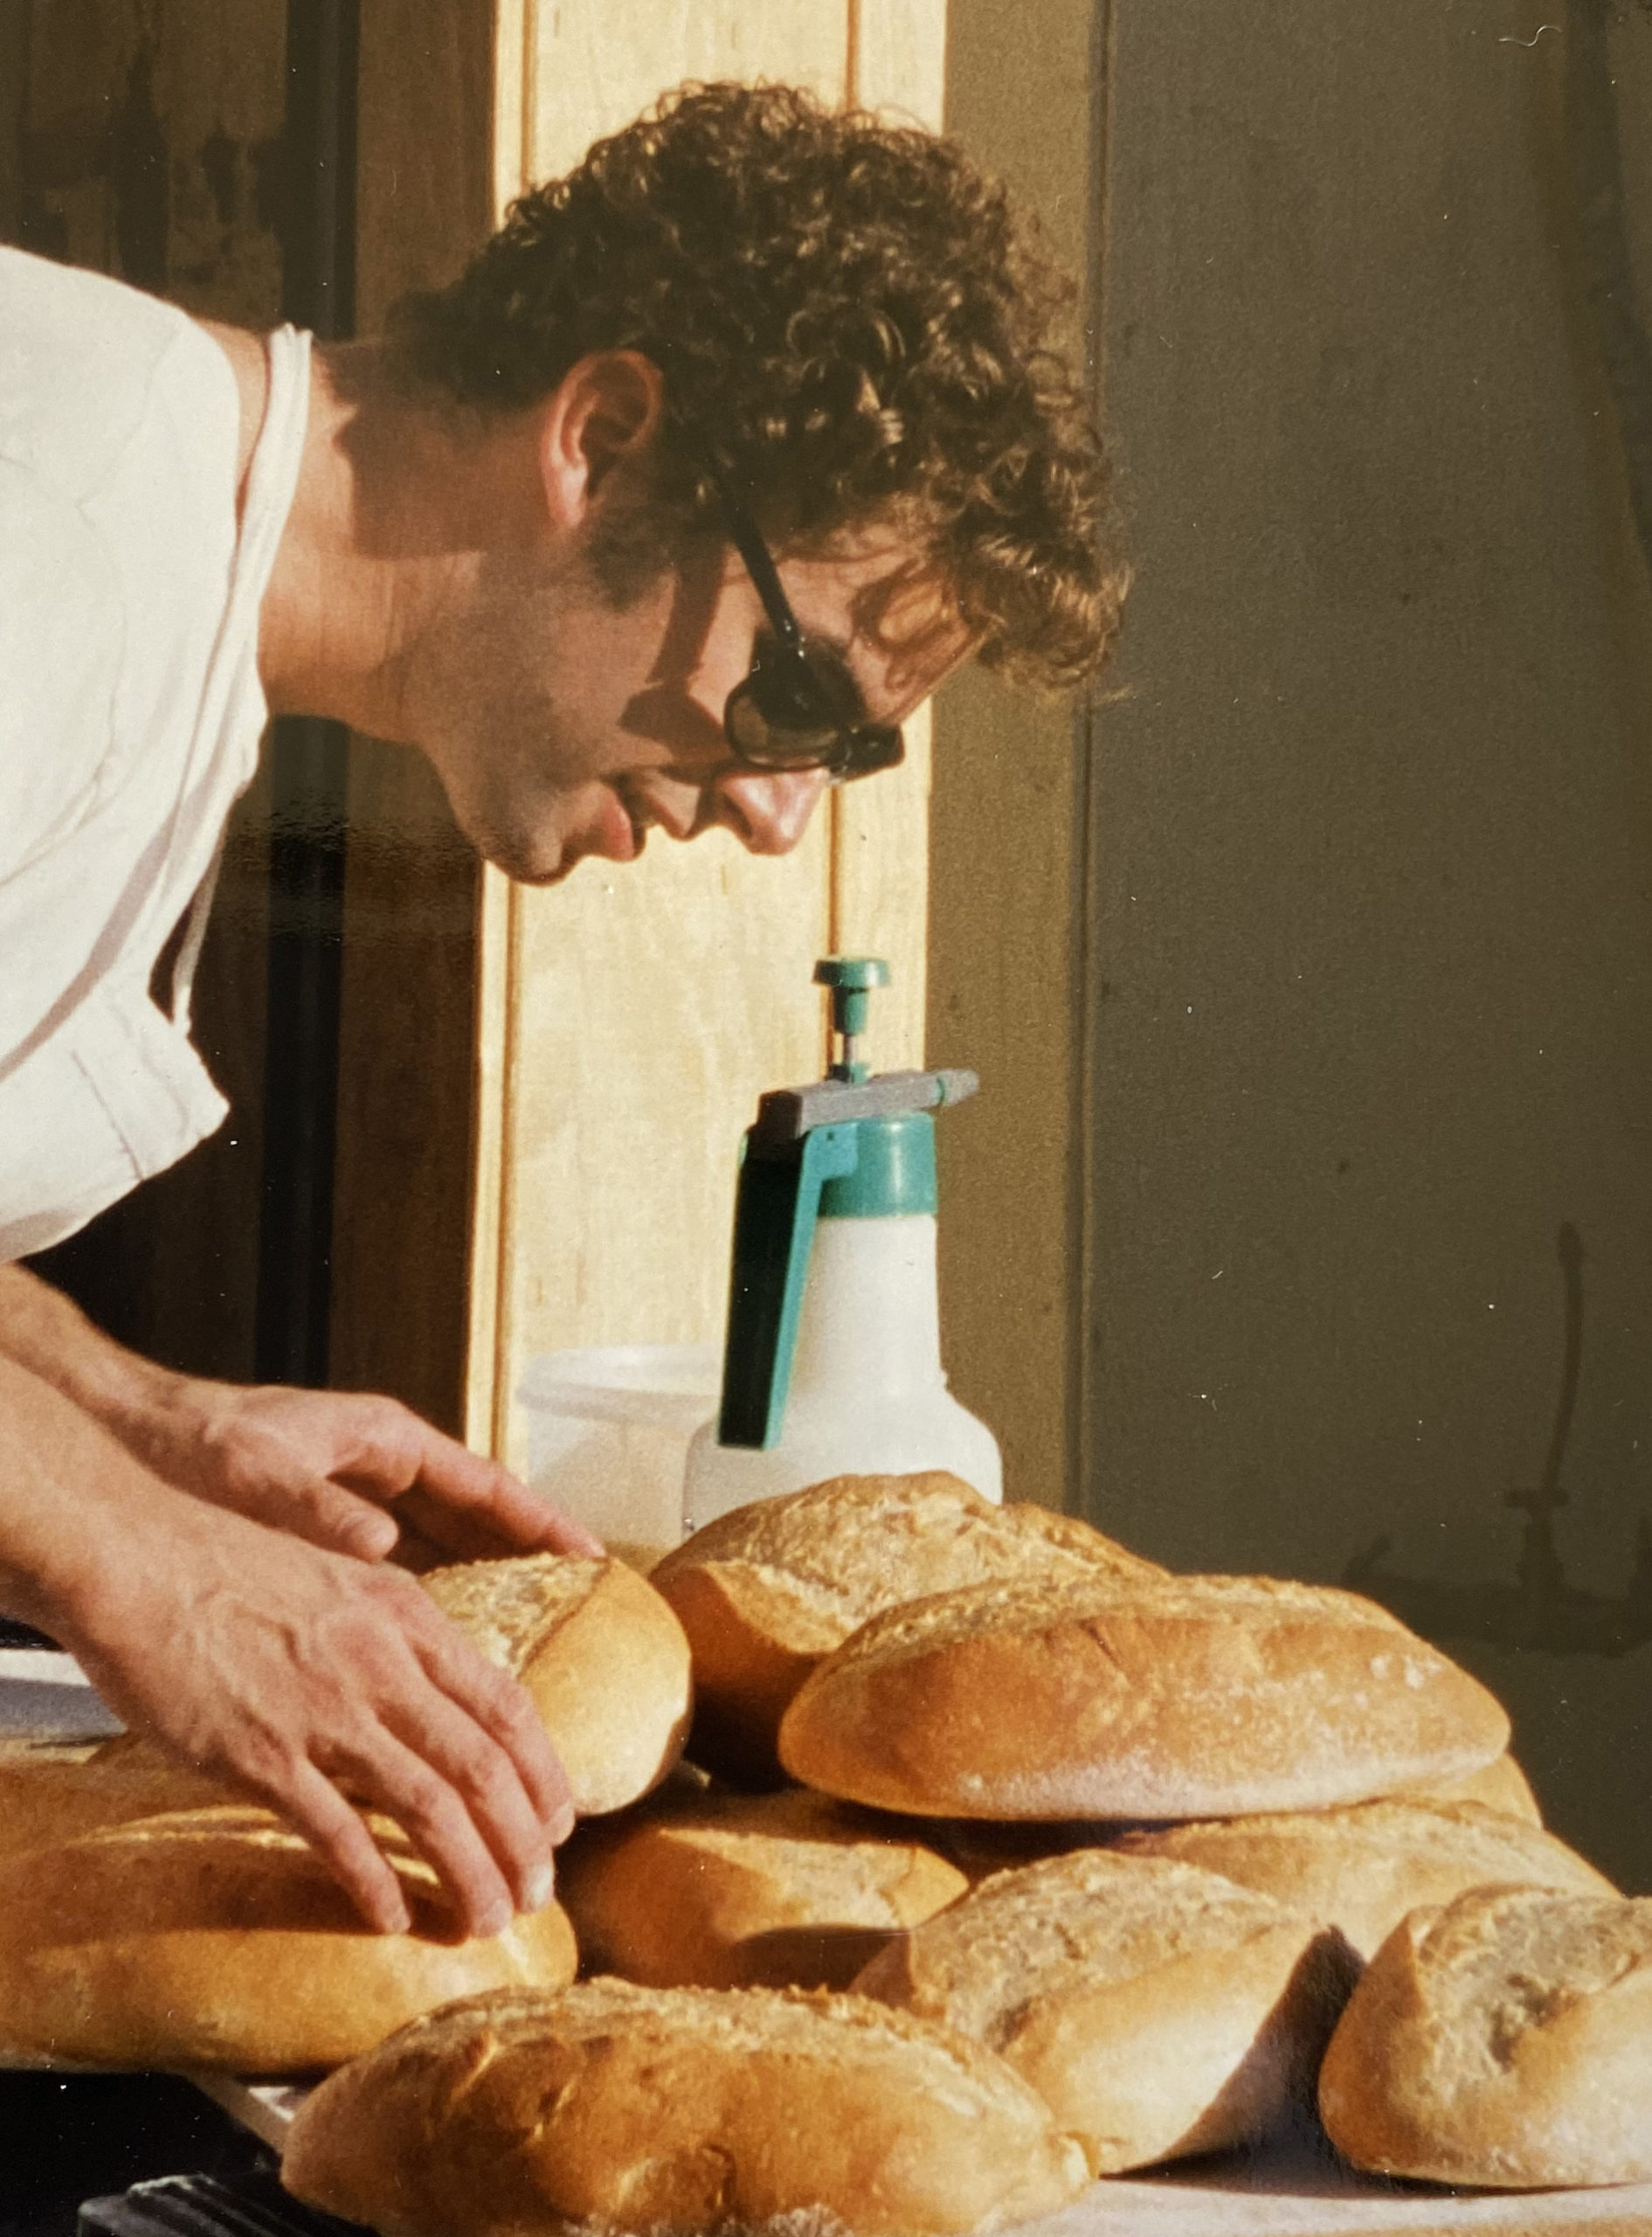 The Inn's freshly baked bread